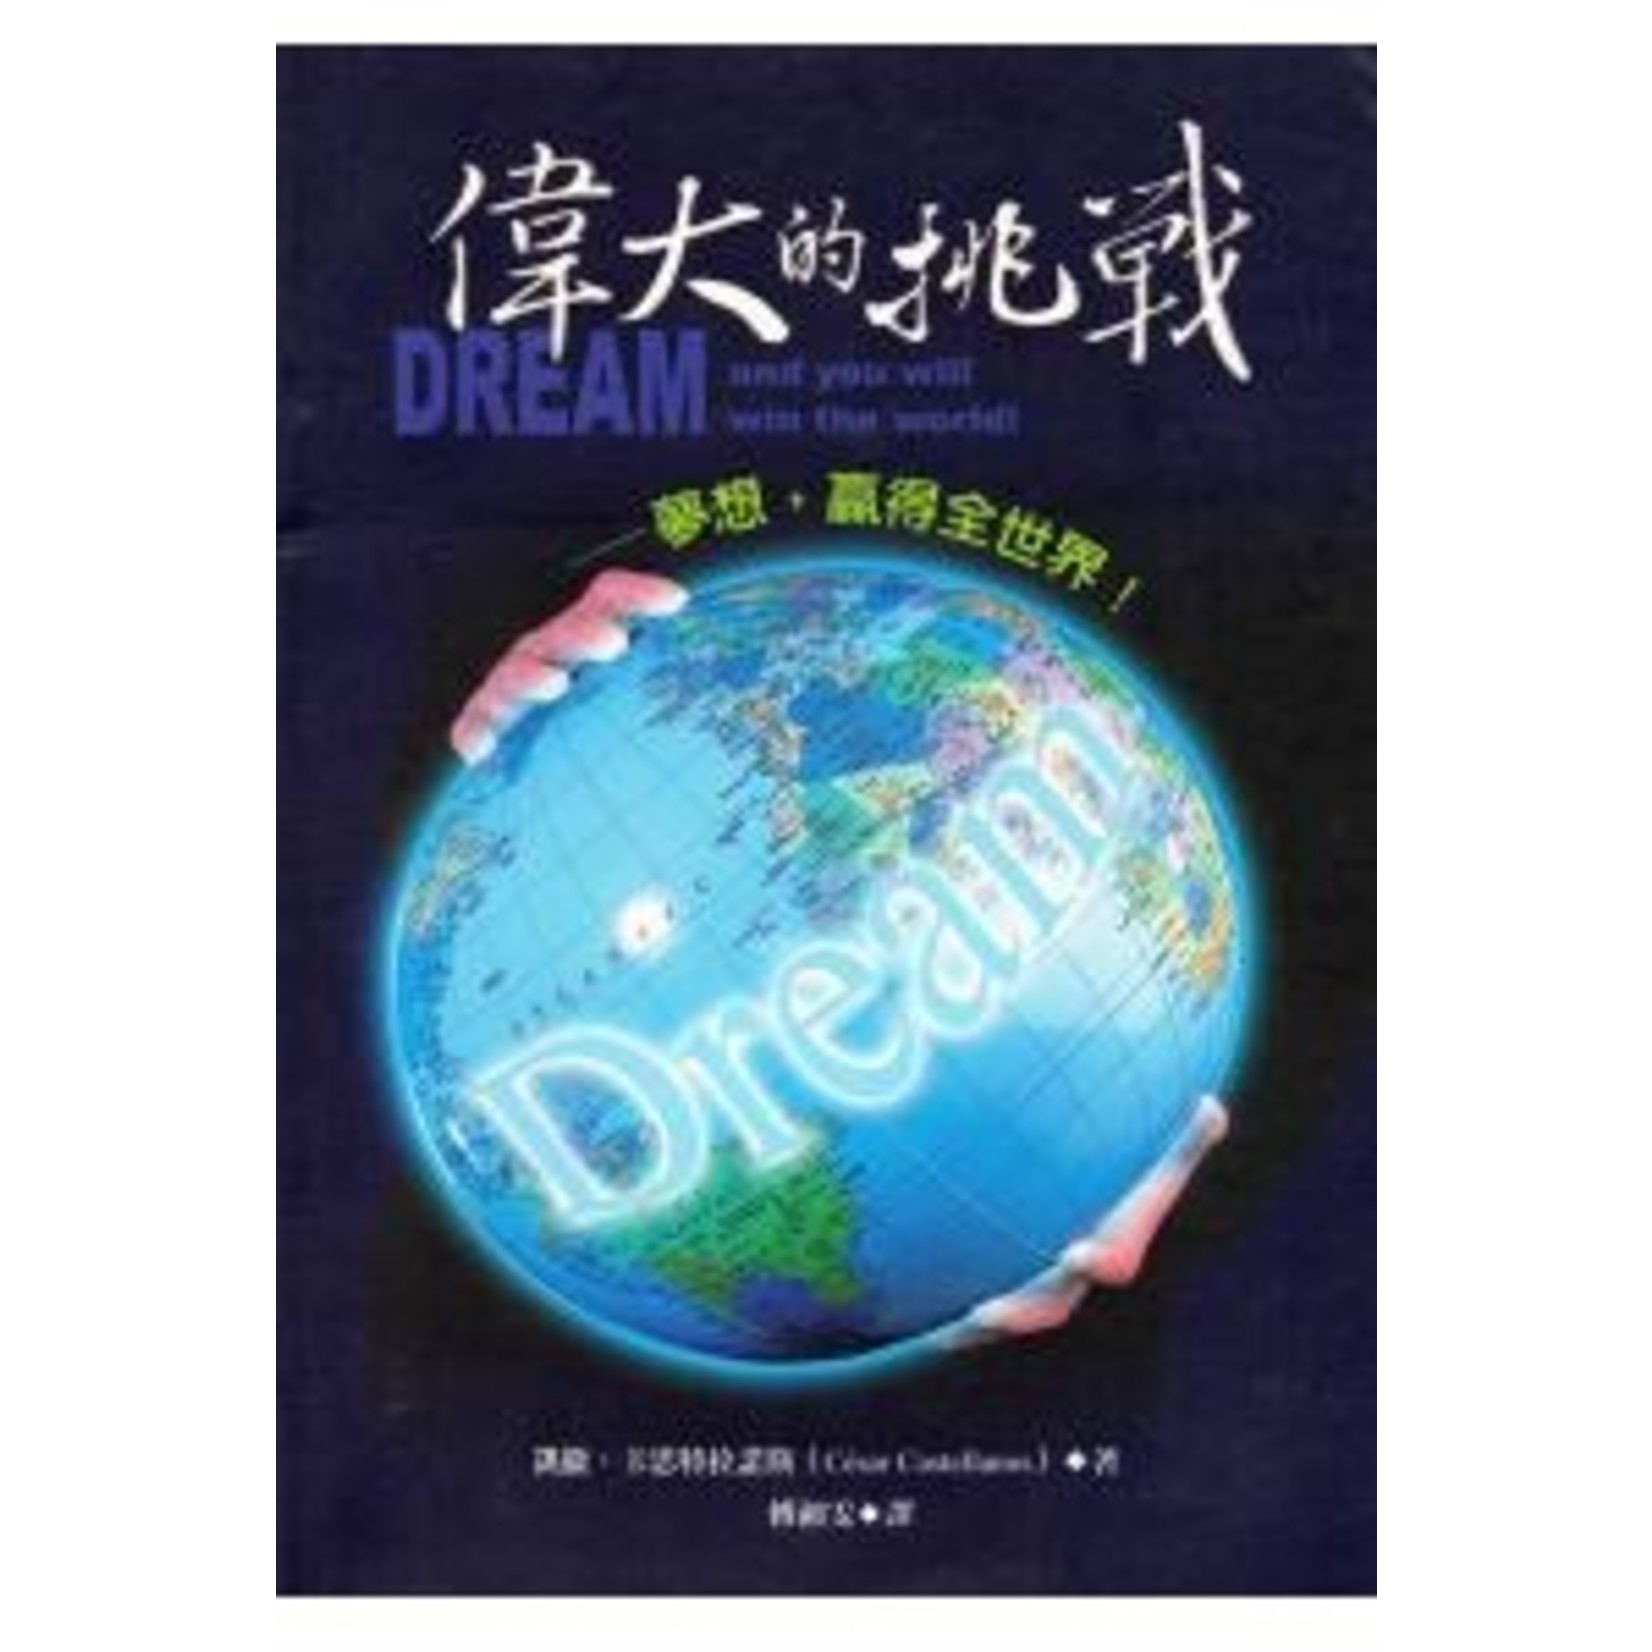 道聲 Taosheng Taiwan 偉大的挑戰 | Dream and You Will Win the World